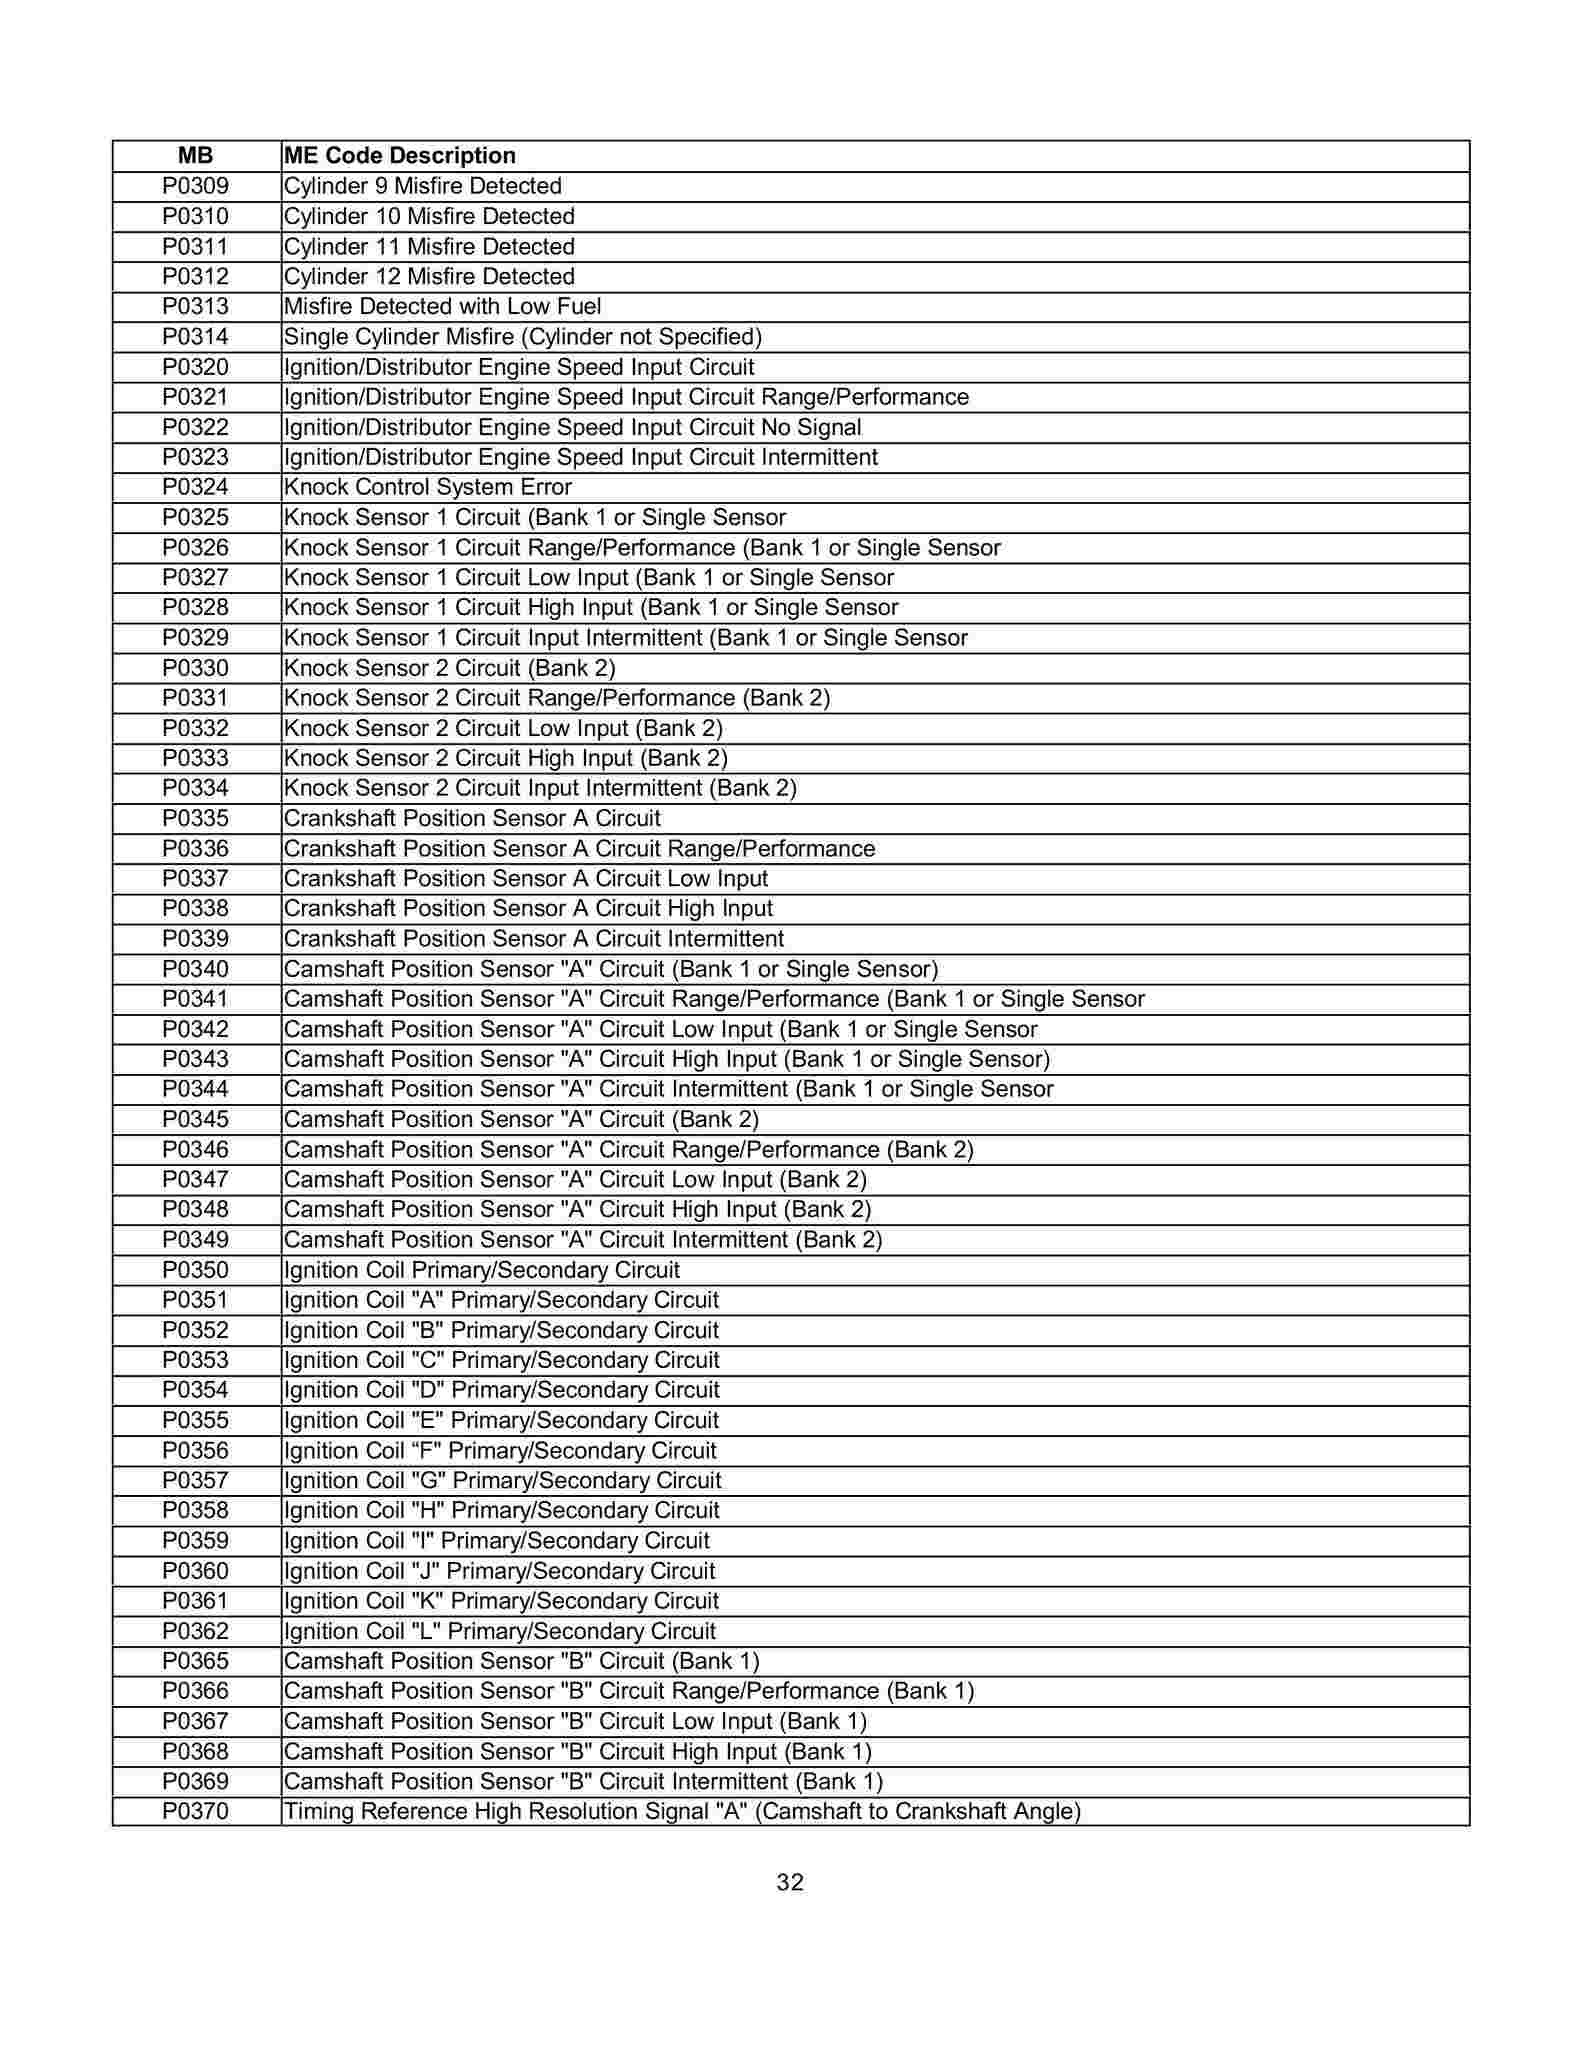 Lista de Códigos de falhas (fault codes) Mercedes-Benz 003212